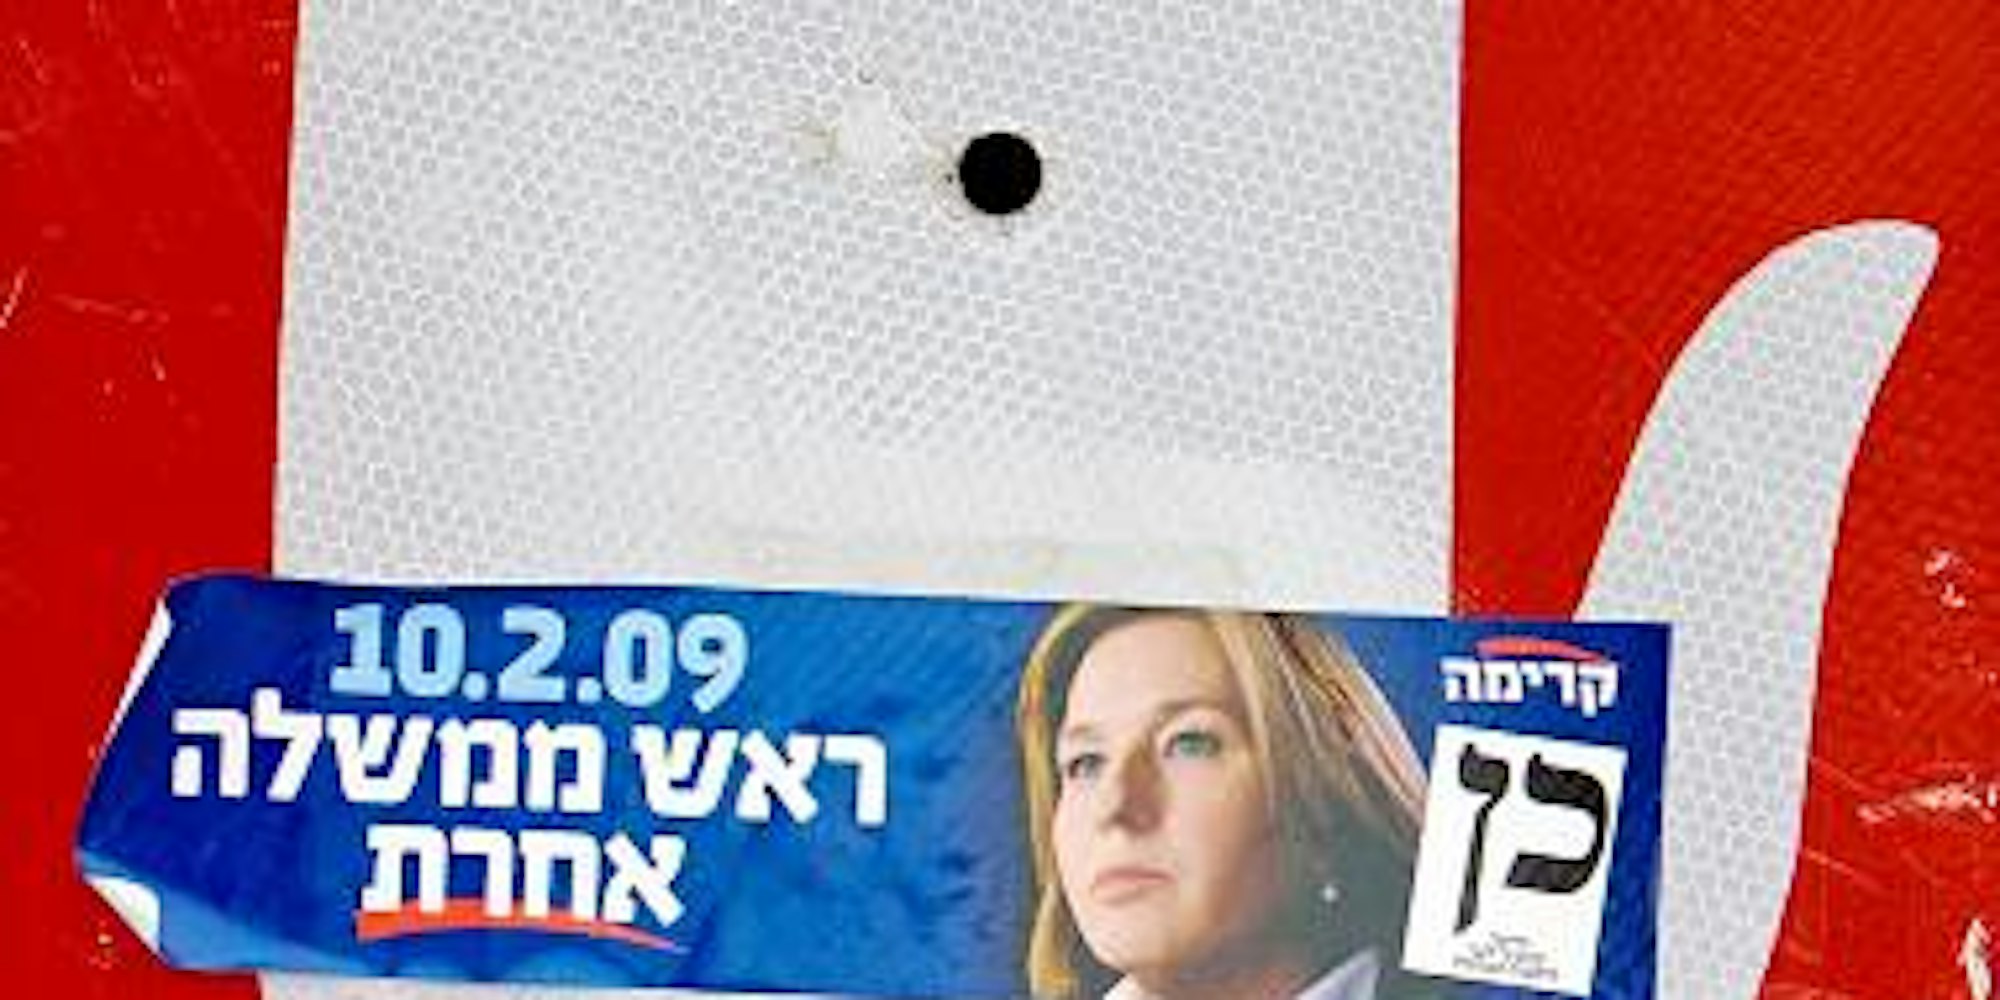 Livni oder Netanjahu? Iris Hefets sieht kurz vor den Wahlen in Israel zwischen den Parteien keine großen Unterschiede. (Bild: AFP)